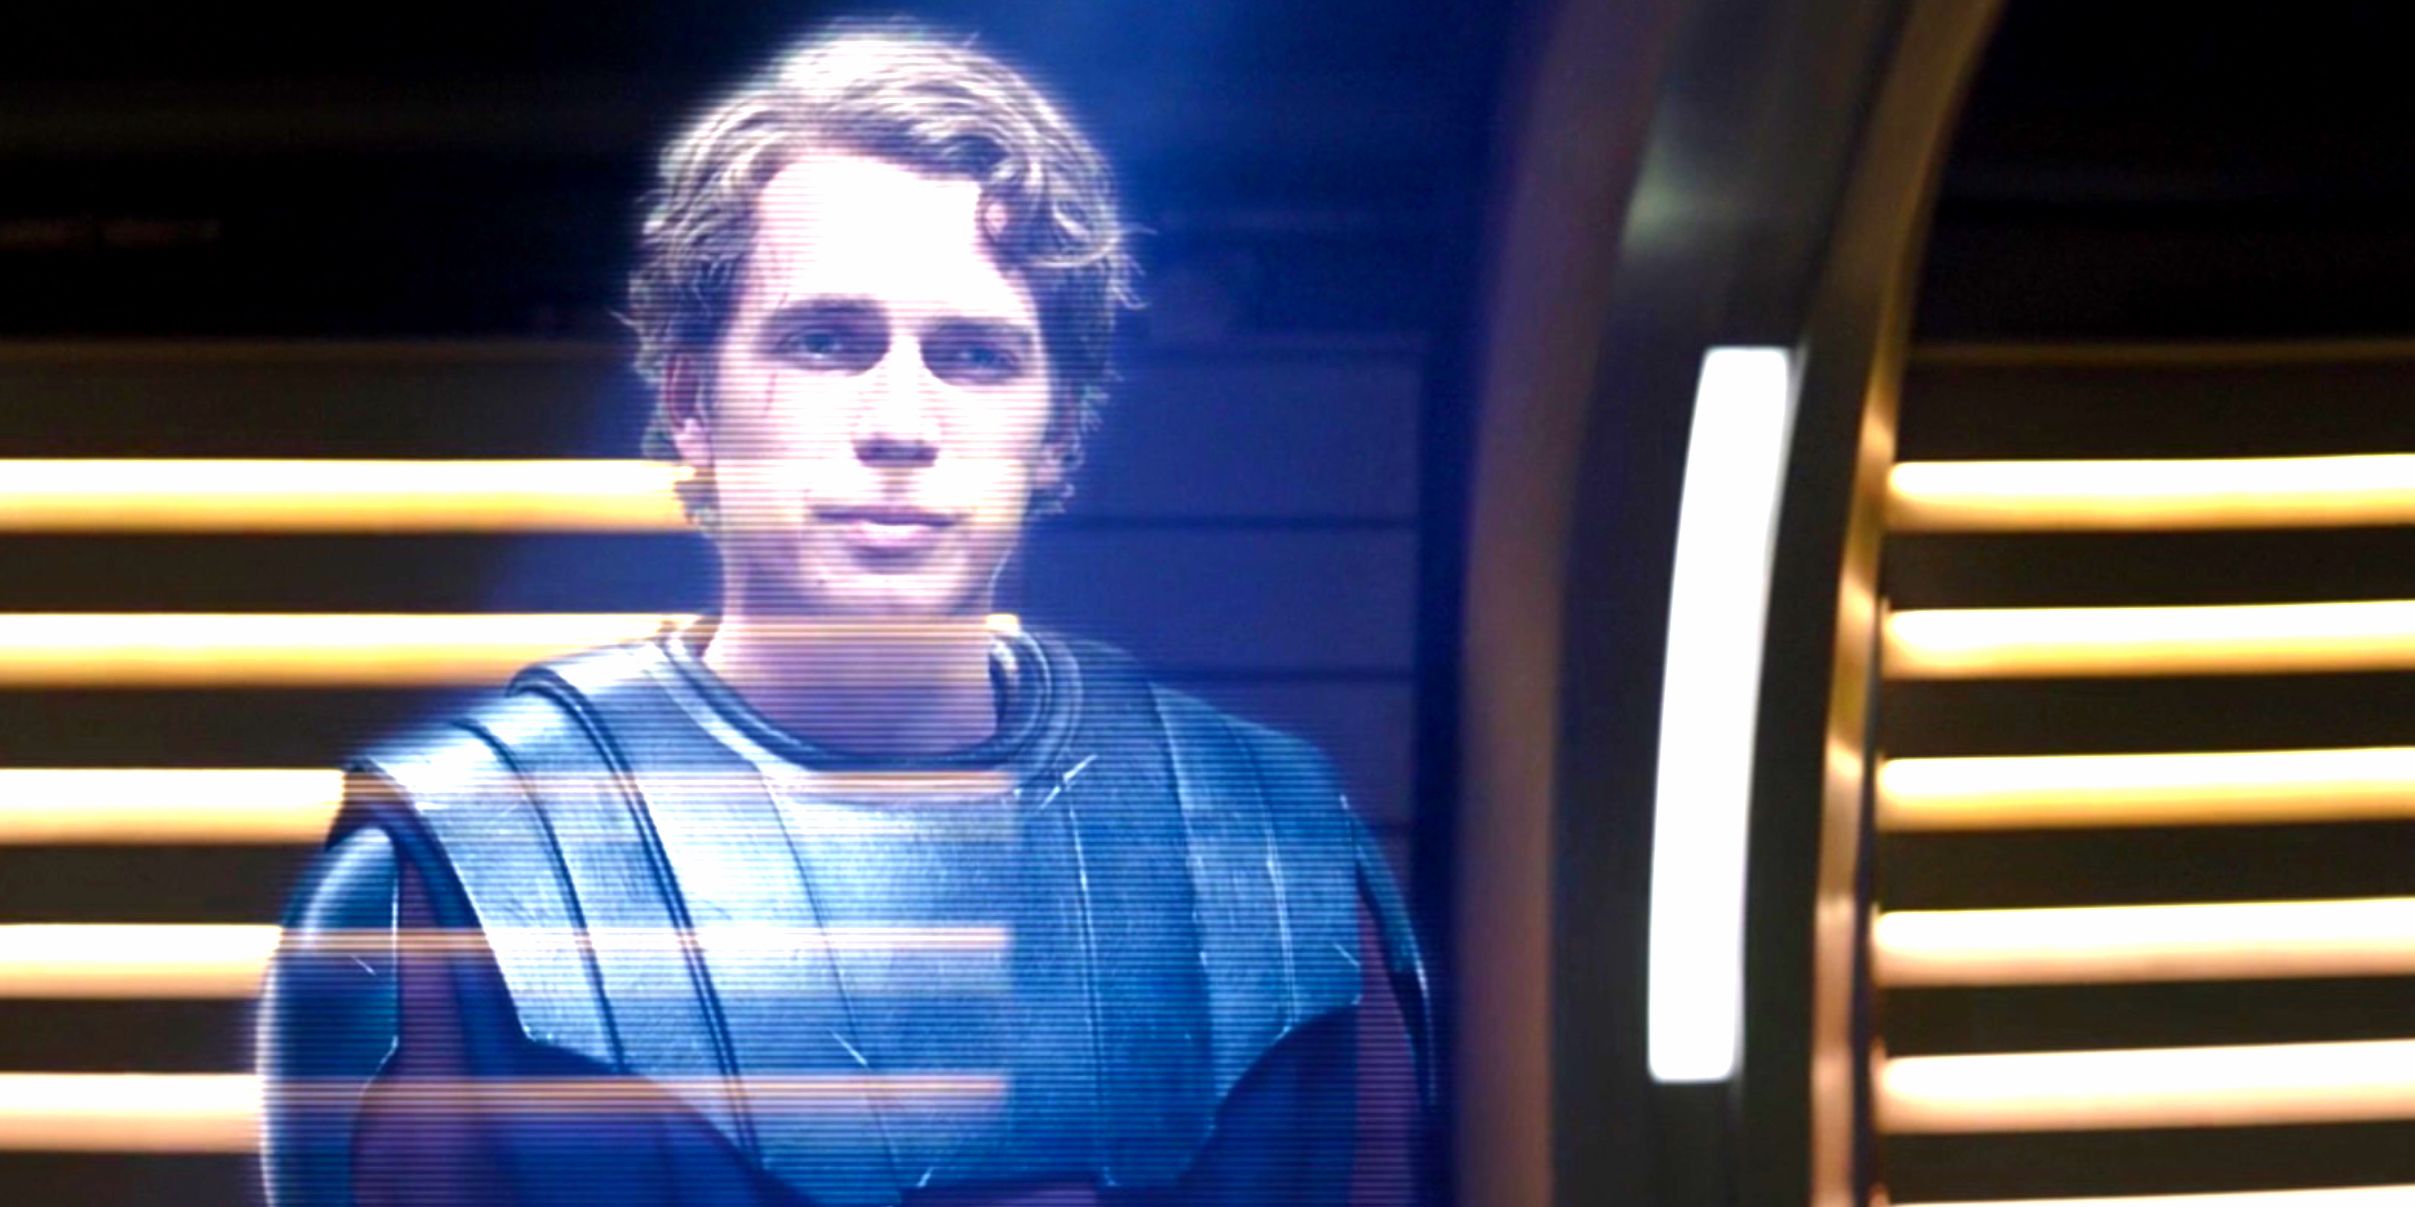 Holovid de Anakin Skywalker de Hayden Christensen no episódio 7 de Ahsoka.